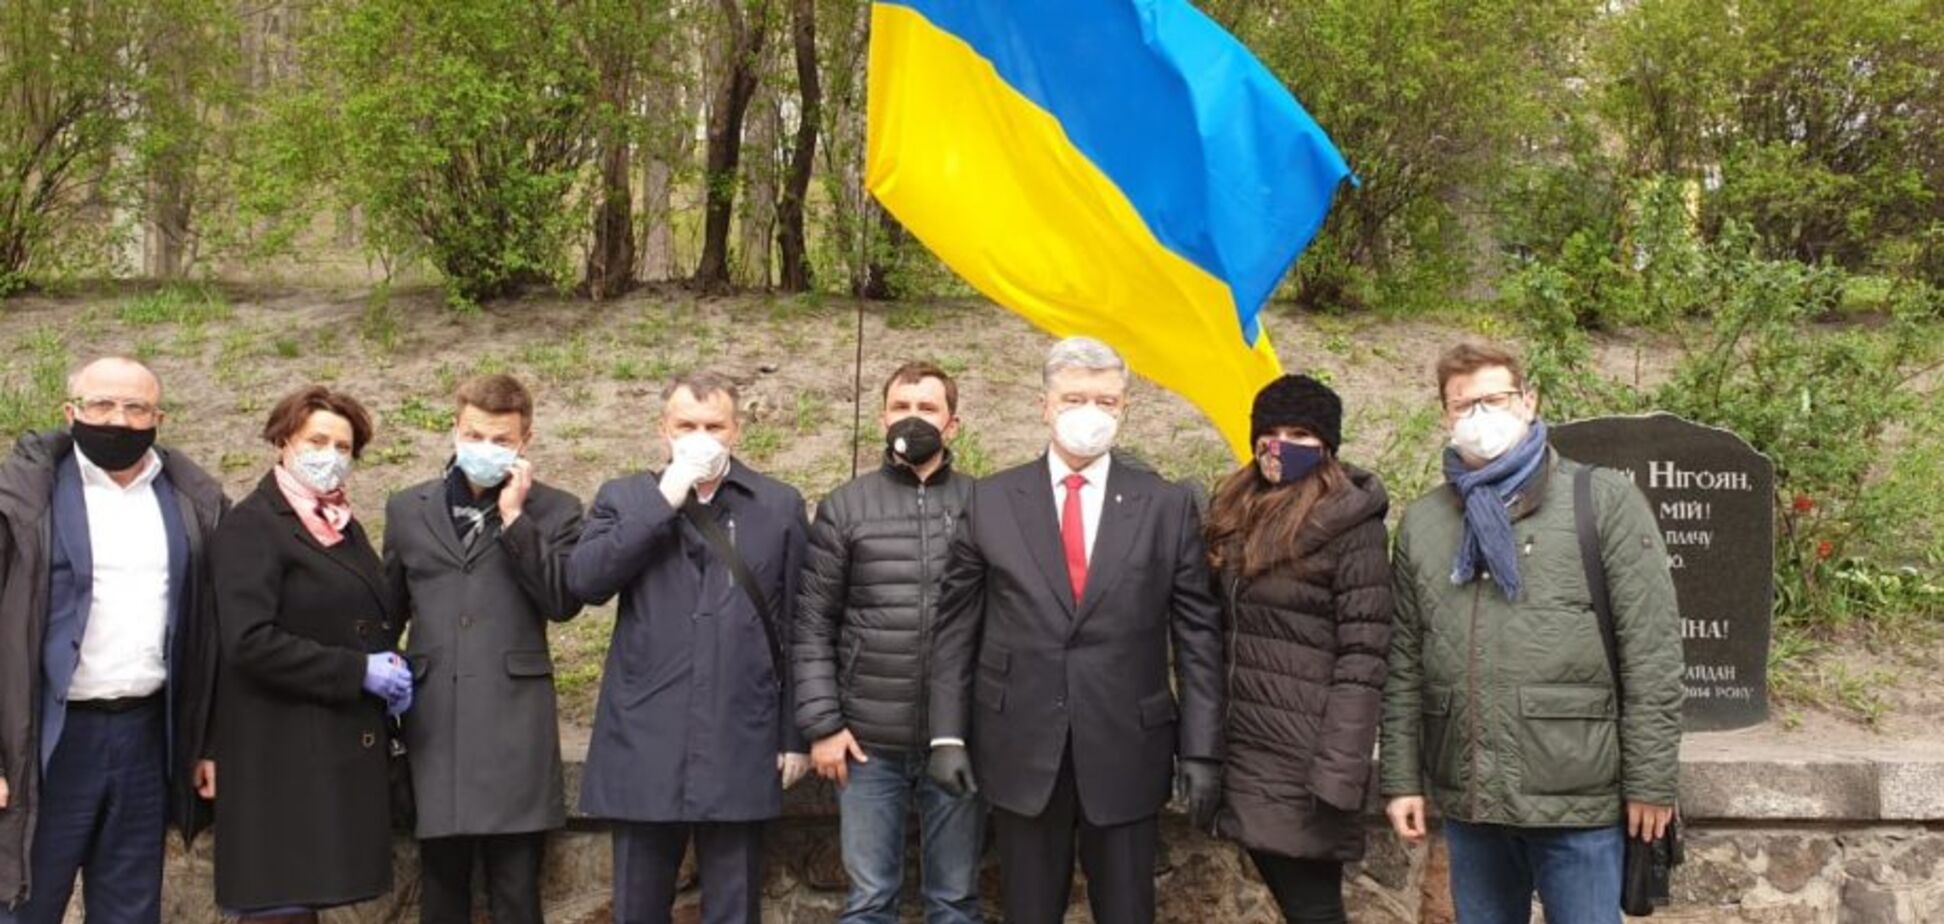 'Европейская Солидарность' возобновила особенный для участников Майдана памятный знак